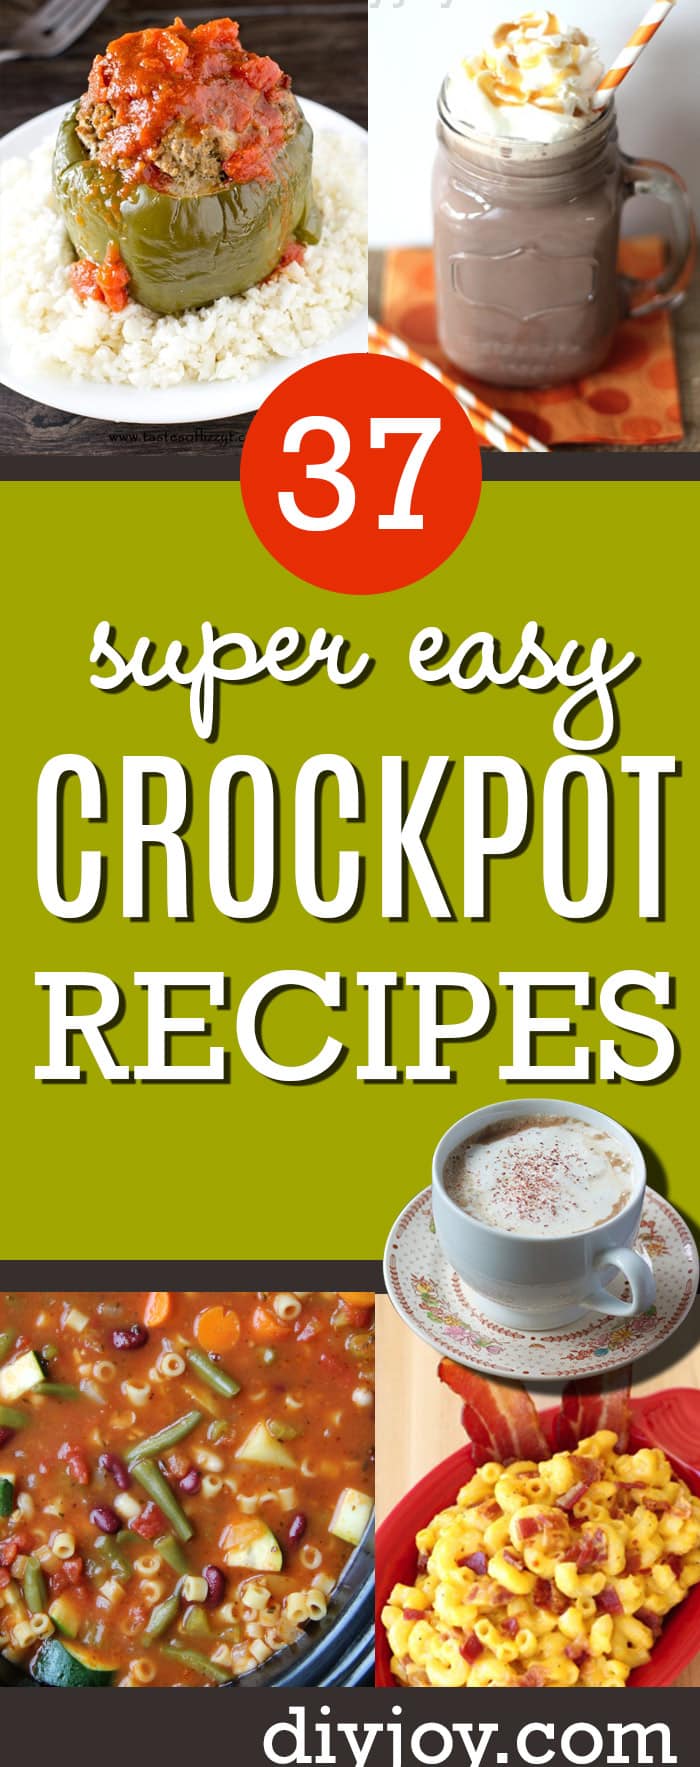 Easy crockpot recipes Pinterest ideas